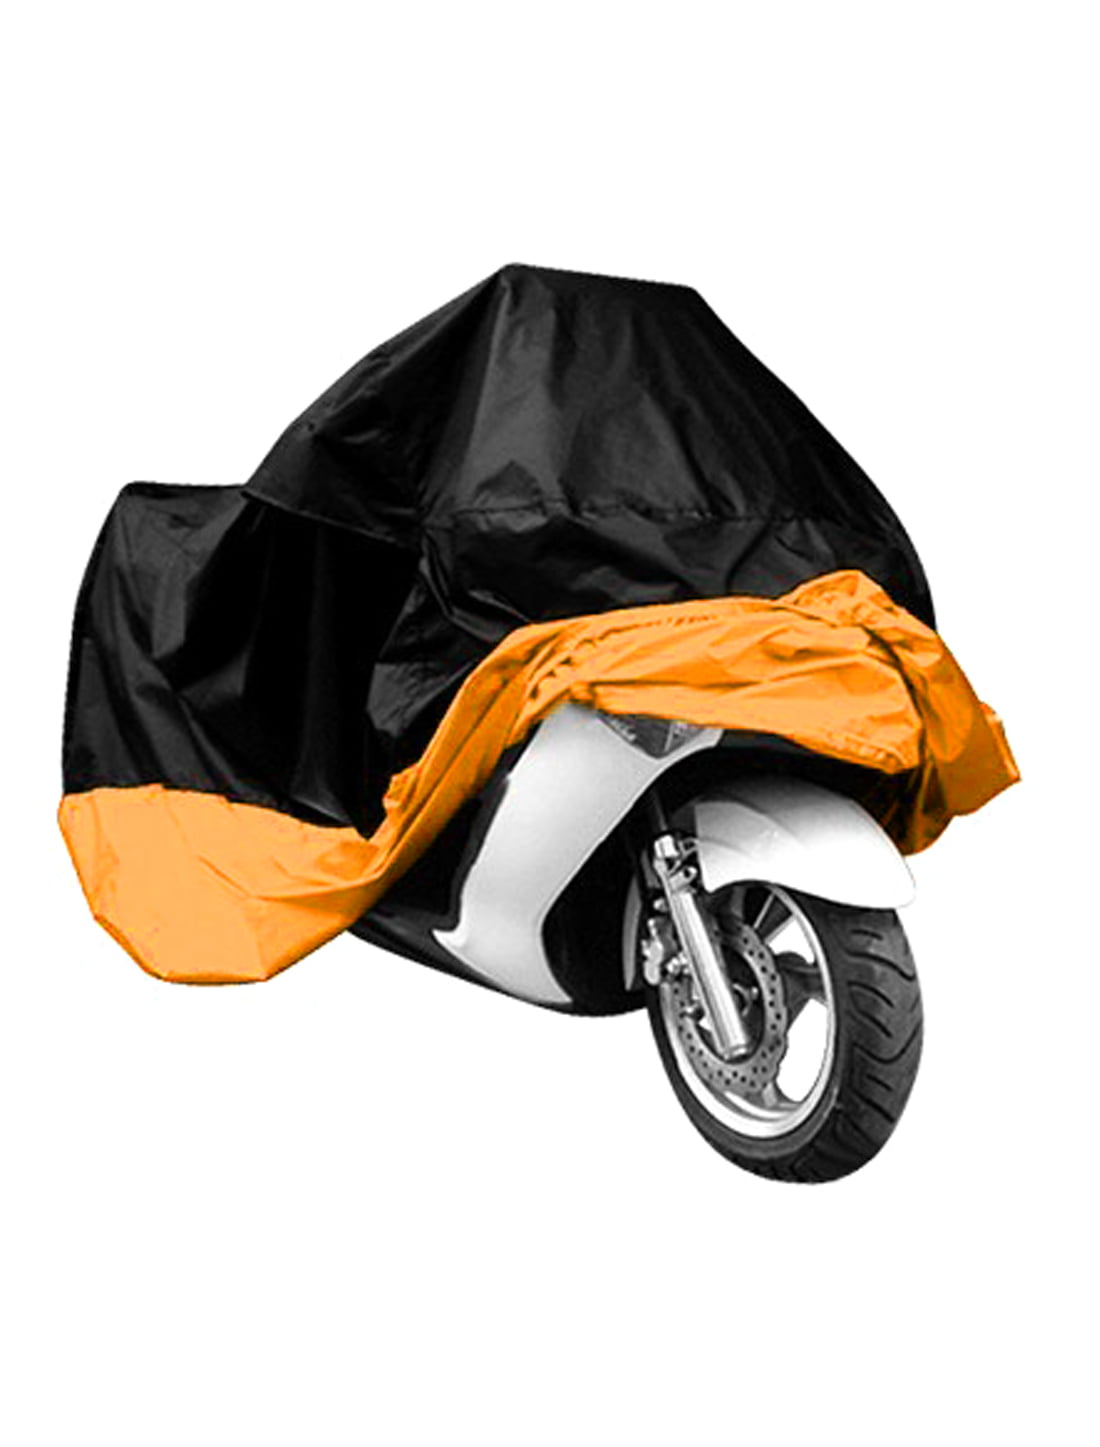 210T Moto Couverture Imperméable la Pluie Anti-UV Couvre-Moto pour Moto Scooter avec Sac 265x105x125cm la poussière la Neige m zimoon Housse Protection pour Moto Couverture Polyester